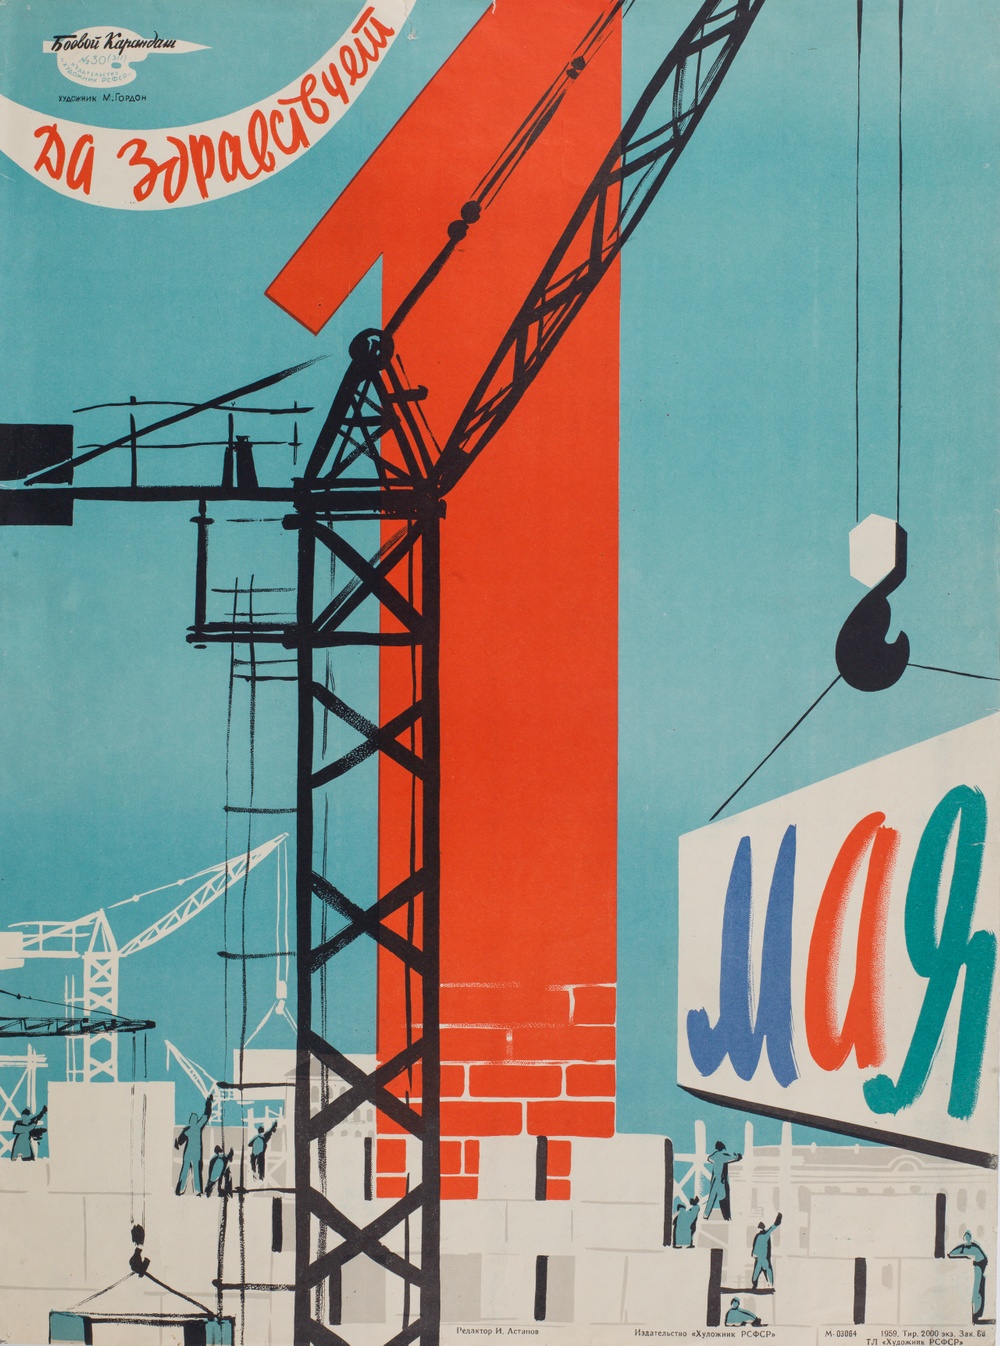 M. Gordo. Long live the 1st of May!, 1959. Poster, Soviet Union.
Bilden av den flygande betongen var återkommande under 1950- och 60-talen. Dess kulturella genomslag och spridning porträtteras i utställningen genom affischkonst, målningar, filmer, leksaker, serieteckningar och operascenografi. 



